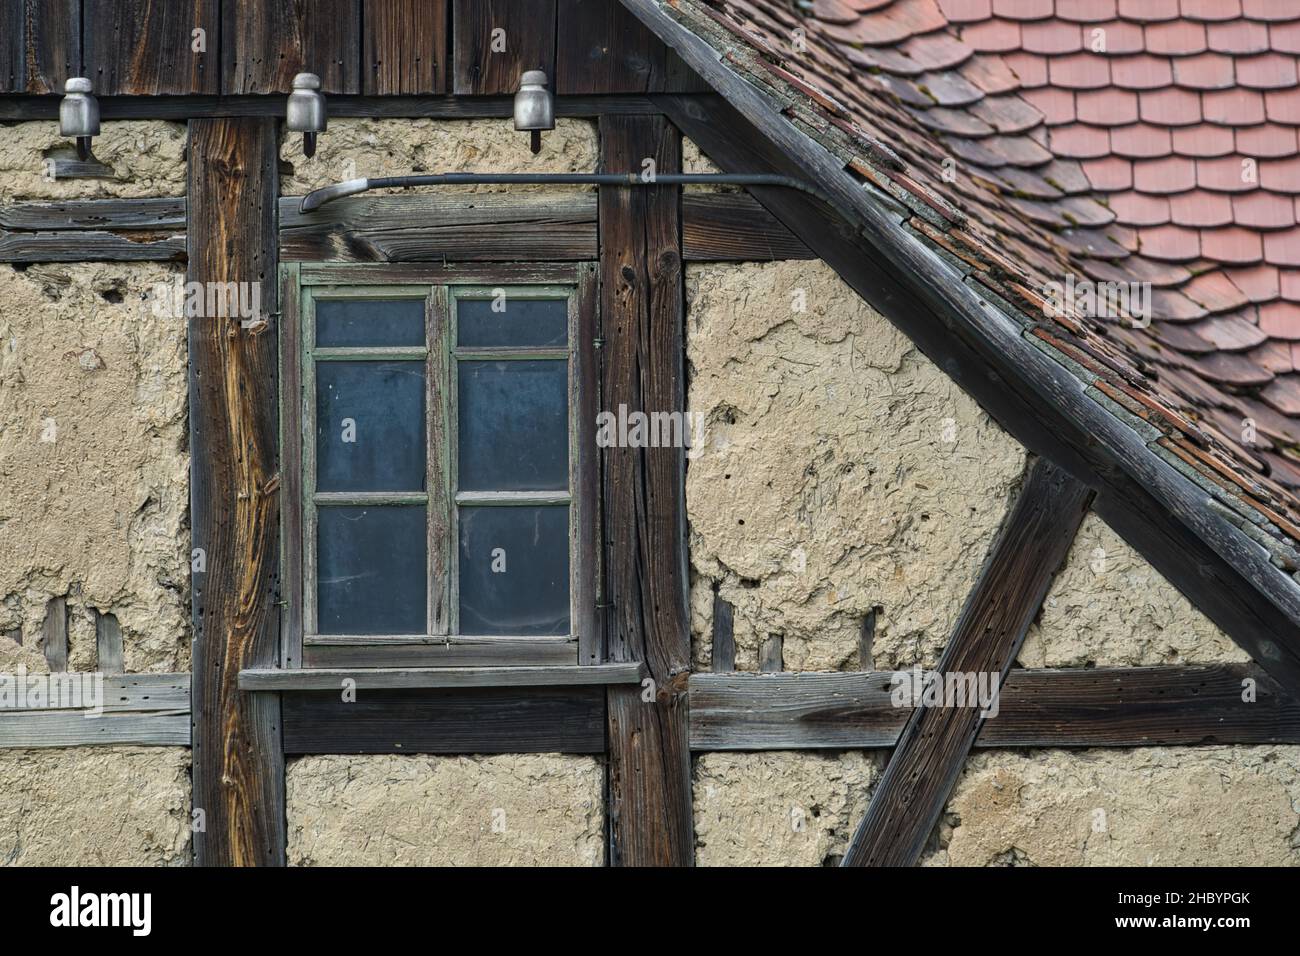 Alter Fachwerkgiebel Ausschnitt mit Lehm ausgefacht altes Fenster und Dachziegeln Banque D'Images